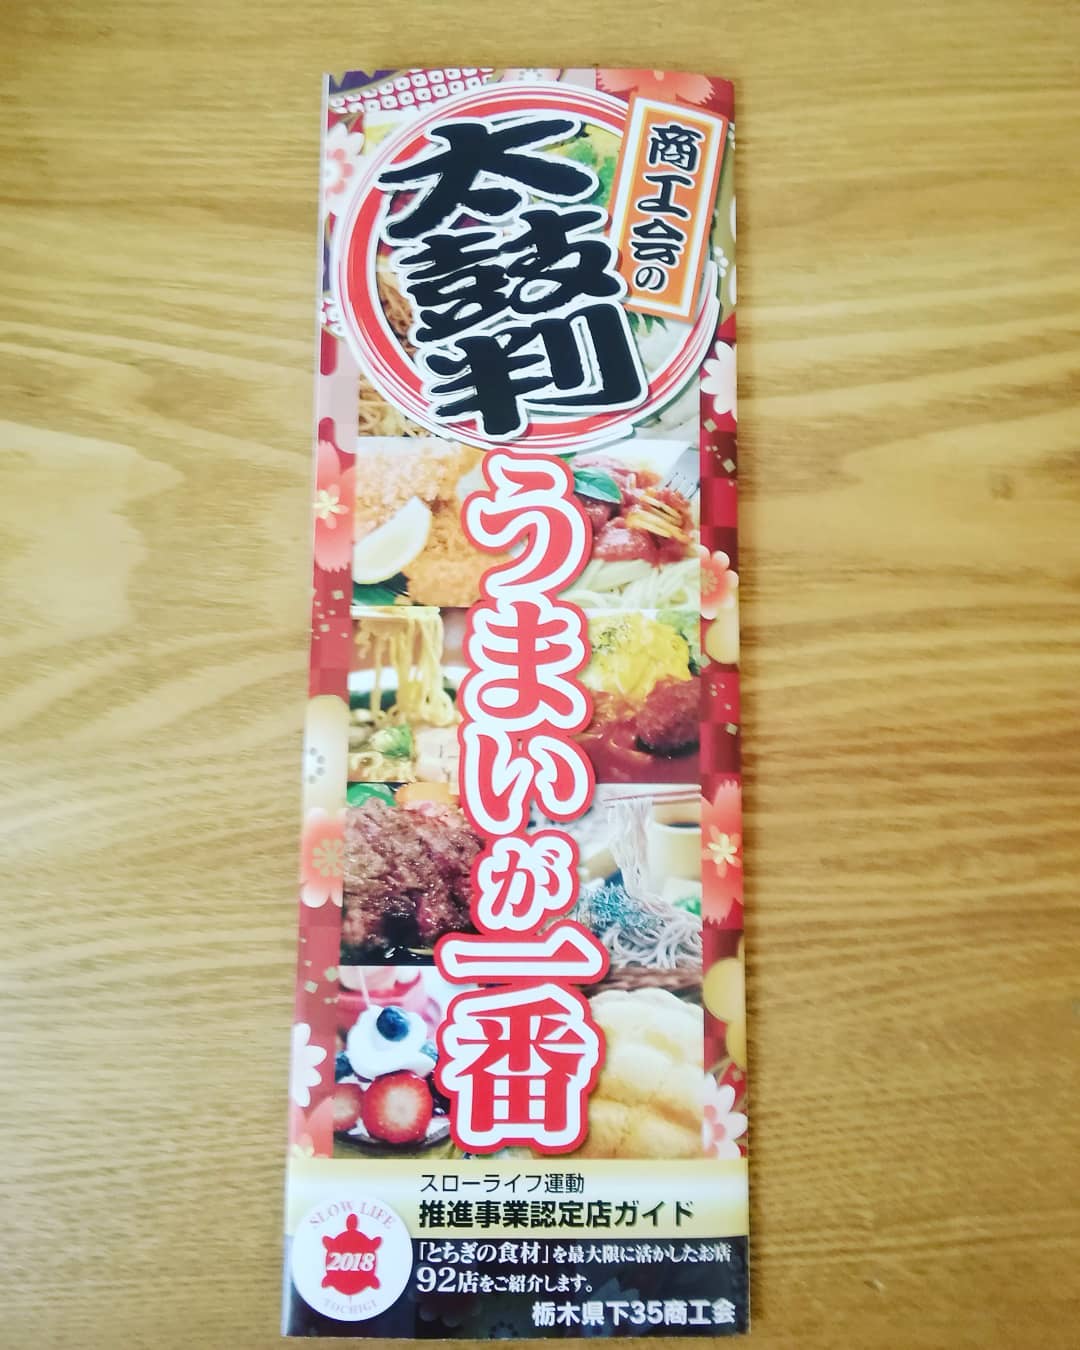 栃木県商工会連合会発行のリーフレットにiipanの石臼挽き全粒粉カンパーニュを掲載していただきました